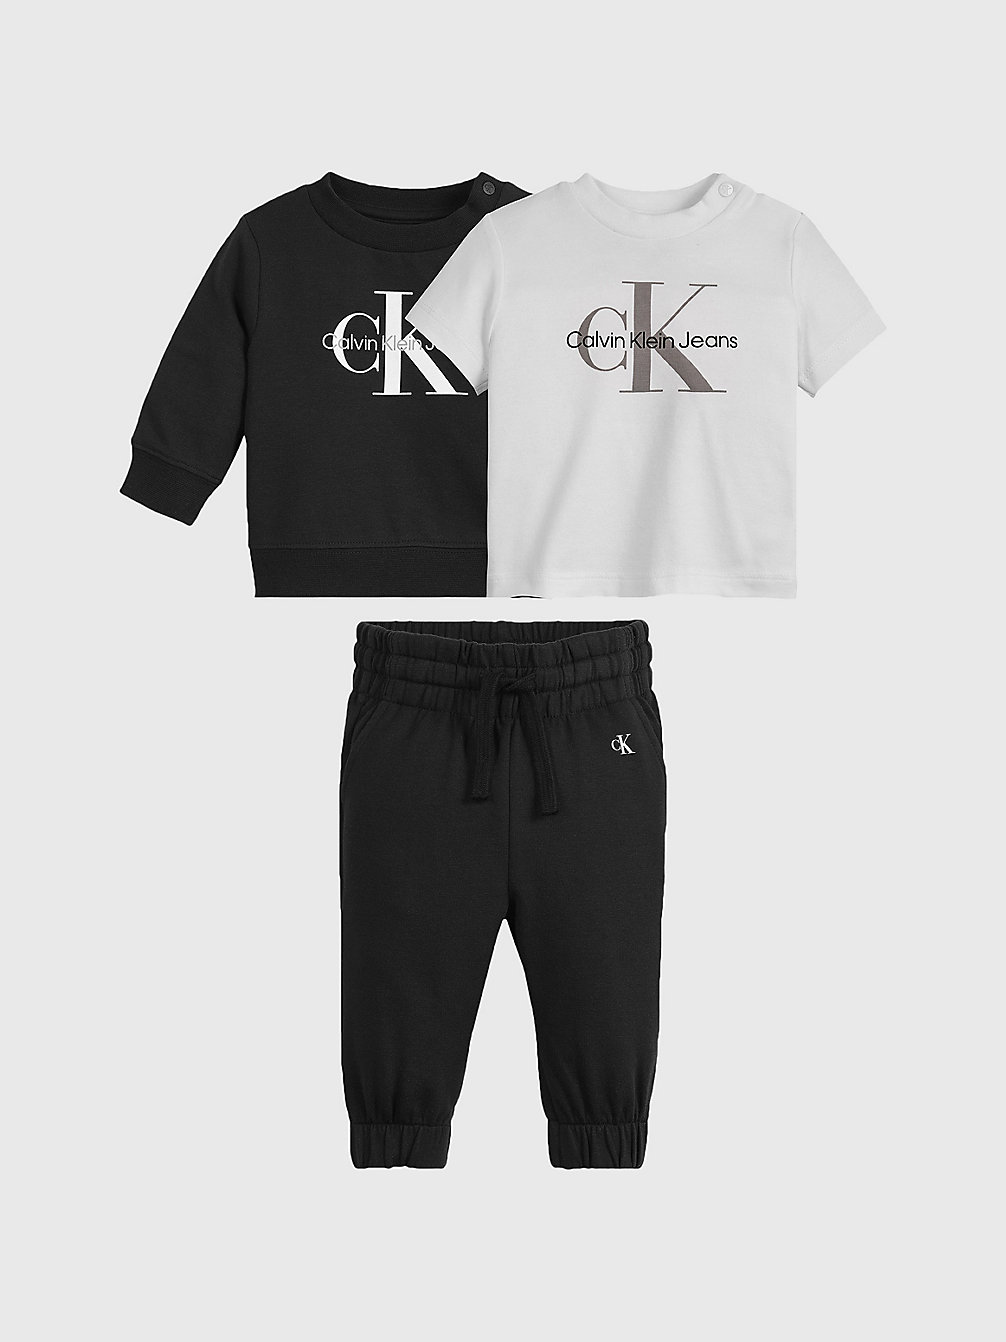 CK BLACK > Komplet Upominkowy Dla Noworodka > undefined newborn - Calvin Klein